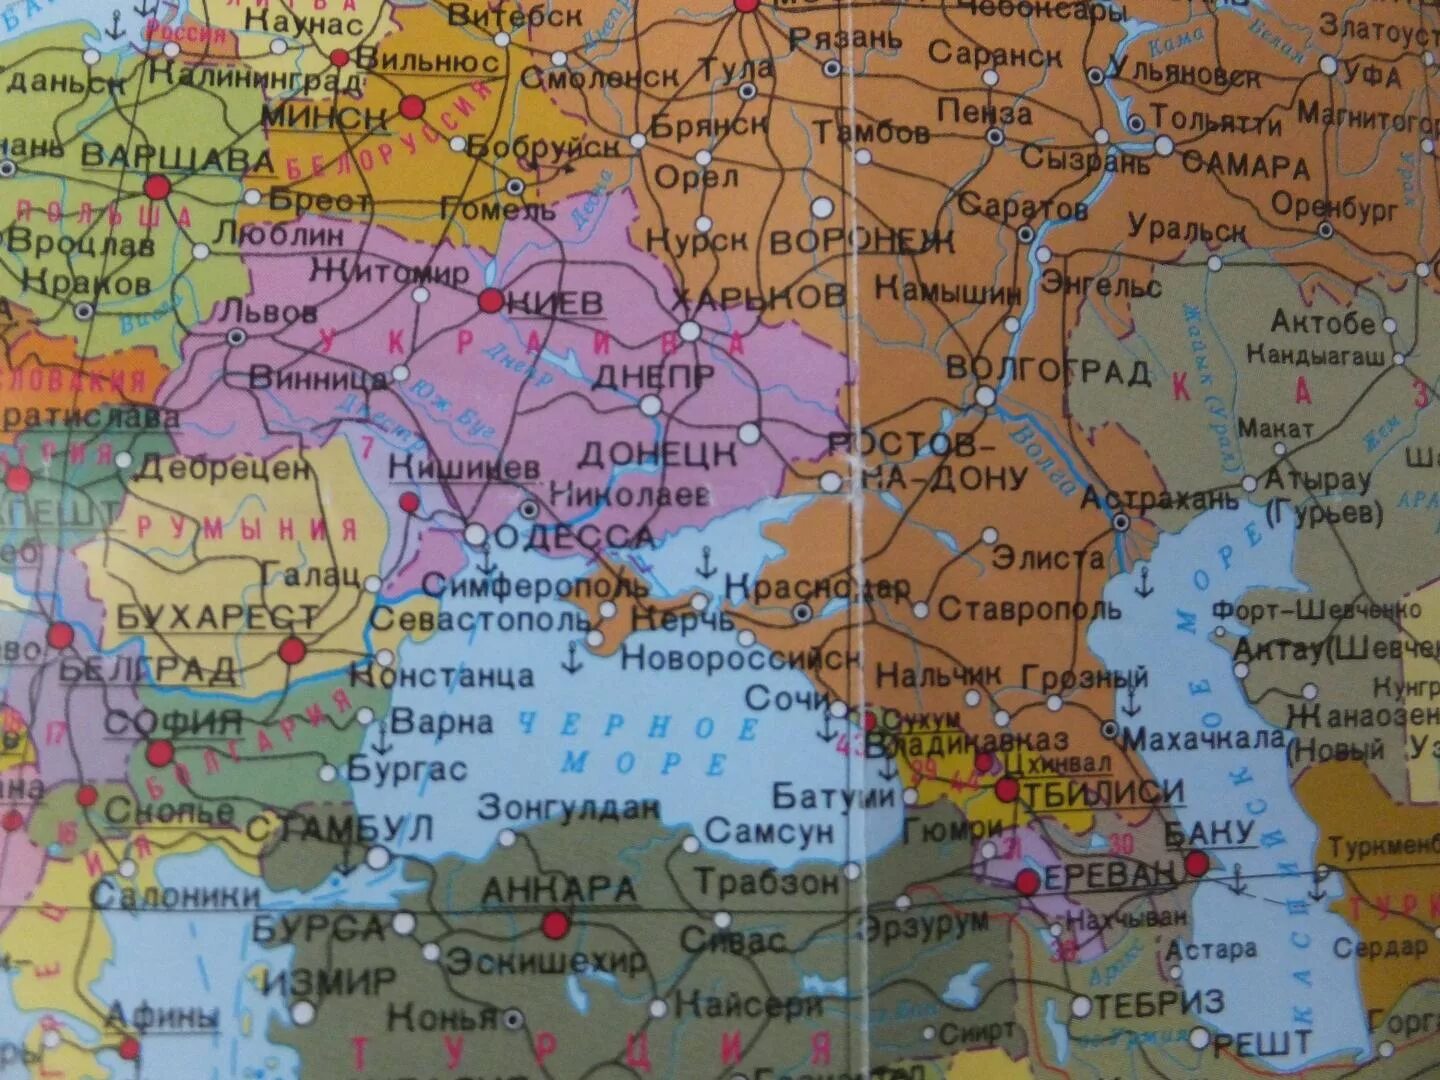 Крым на карте Европы. Крым на политической карте. Карта Крыма и Украины и России.